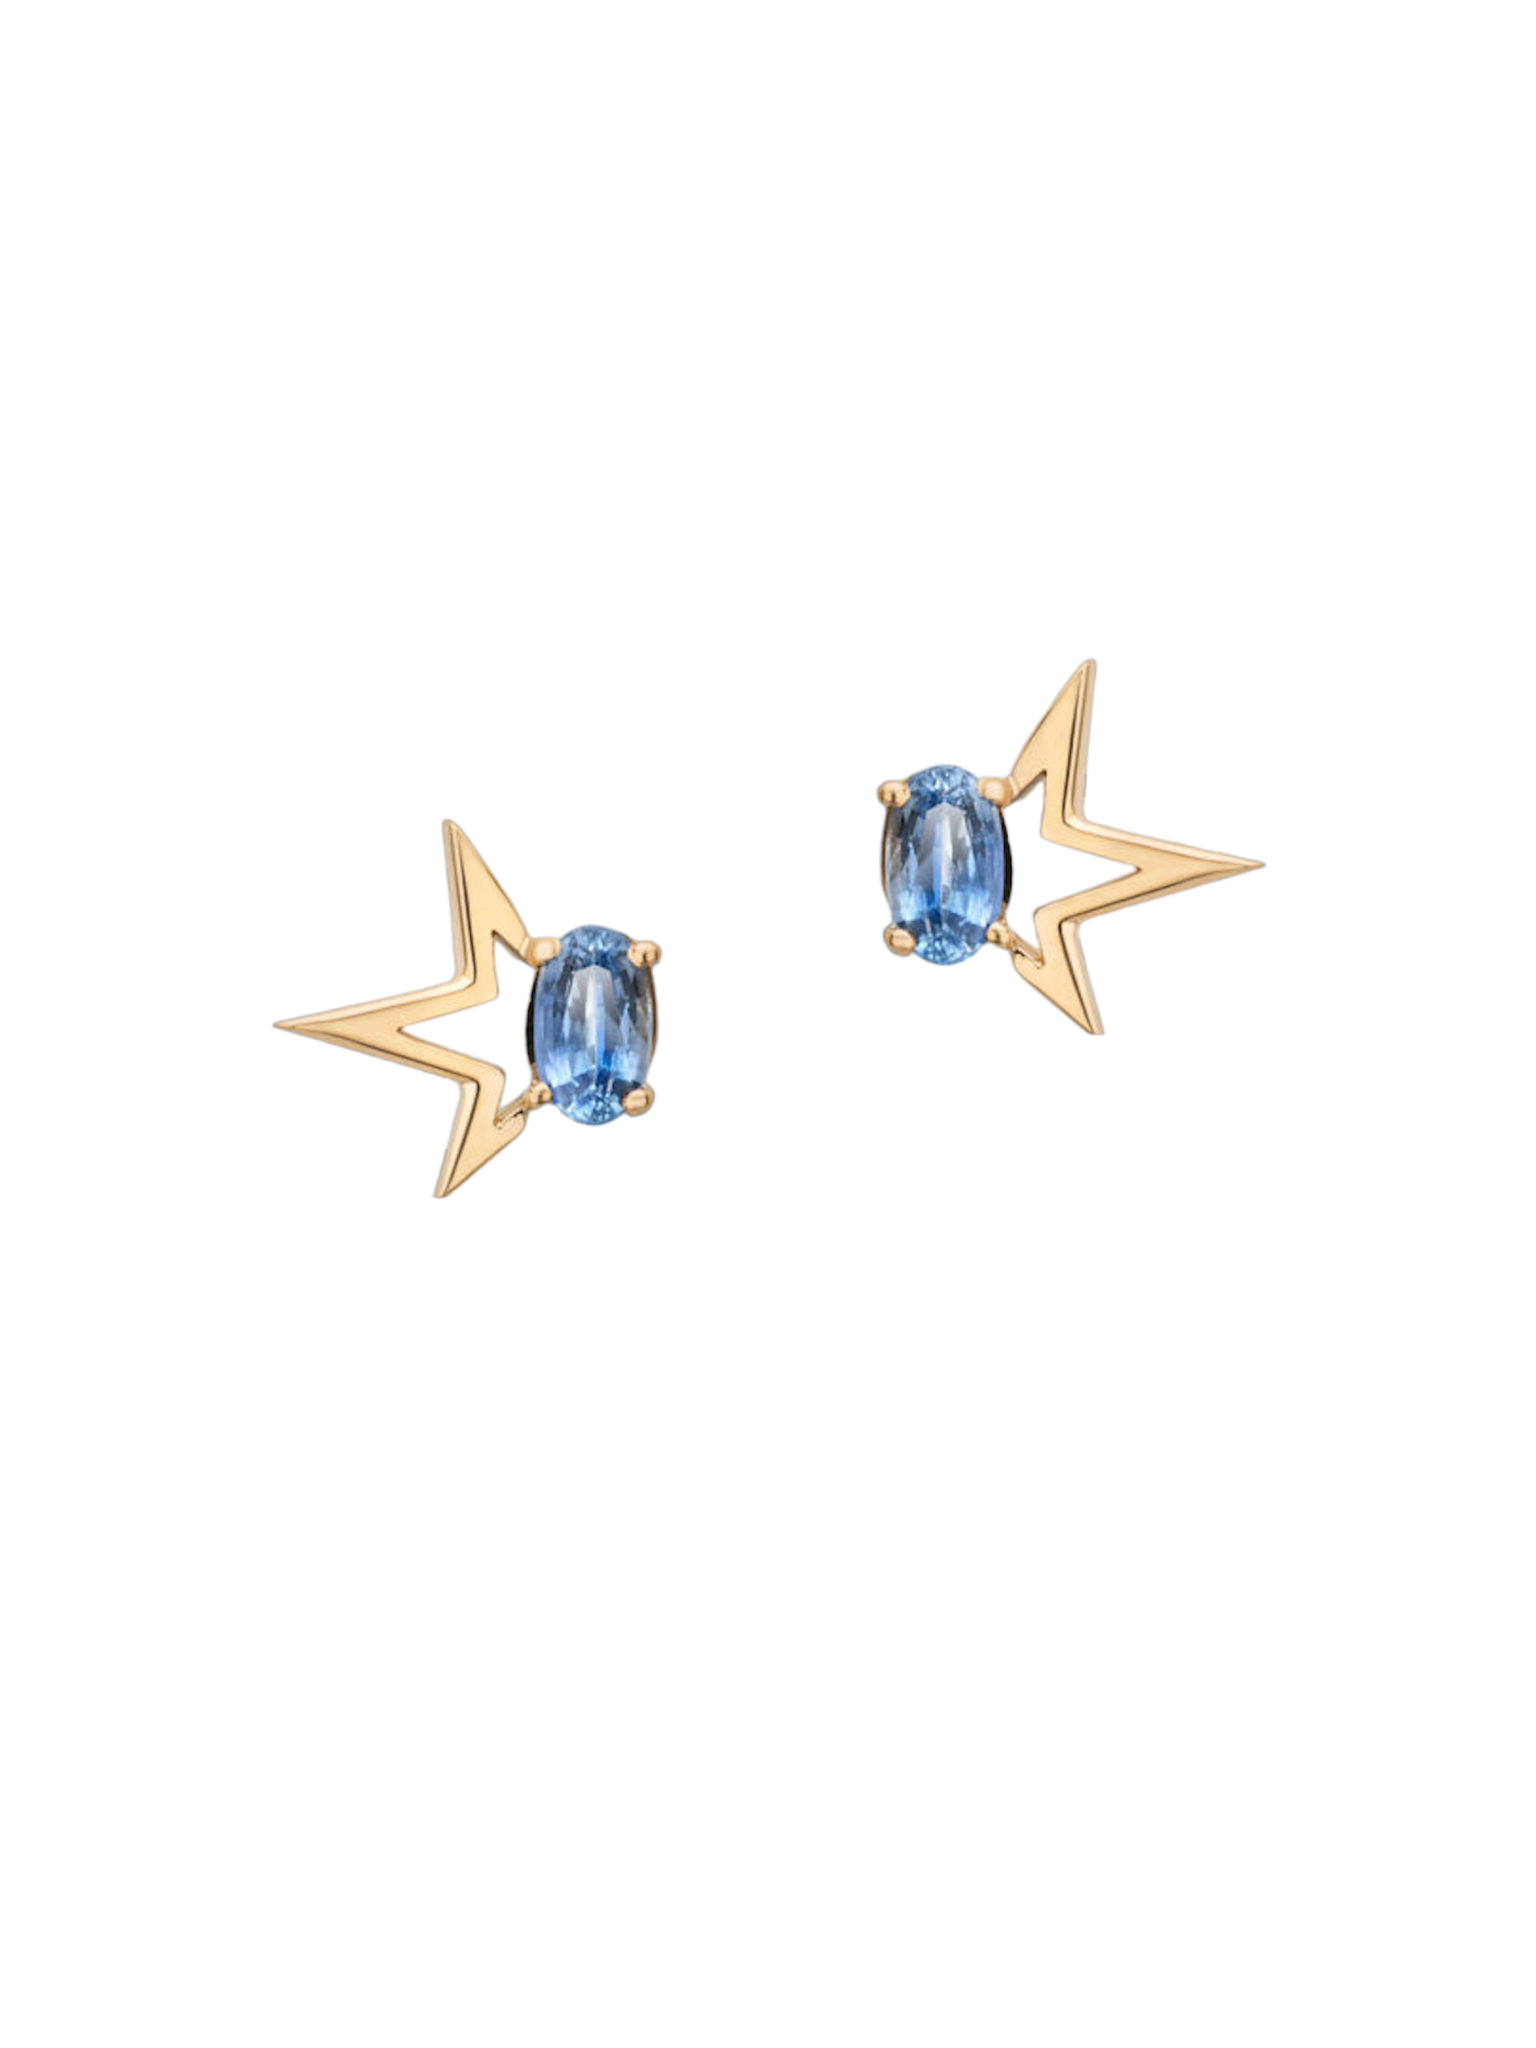 Sapphire stud earrings